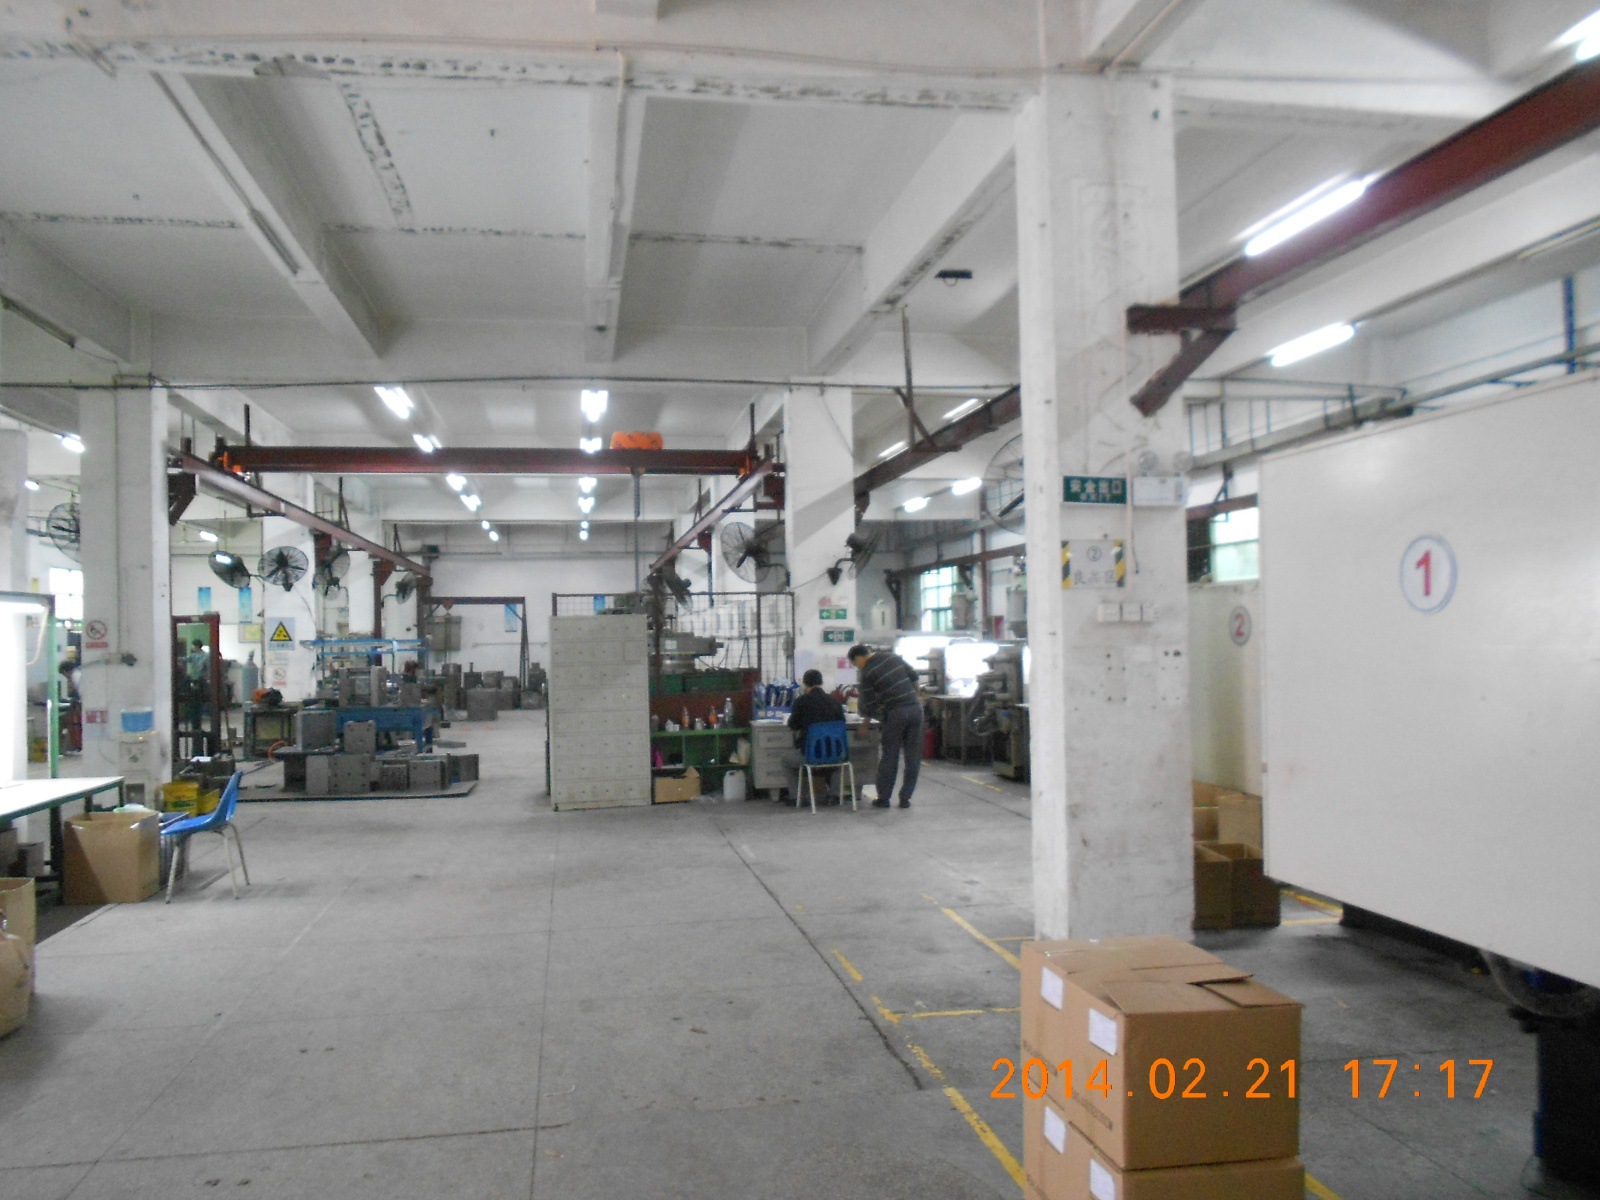 滨州阳信流坡坞小塑料加工厂存在污染和安全隐患